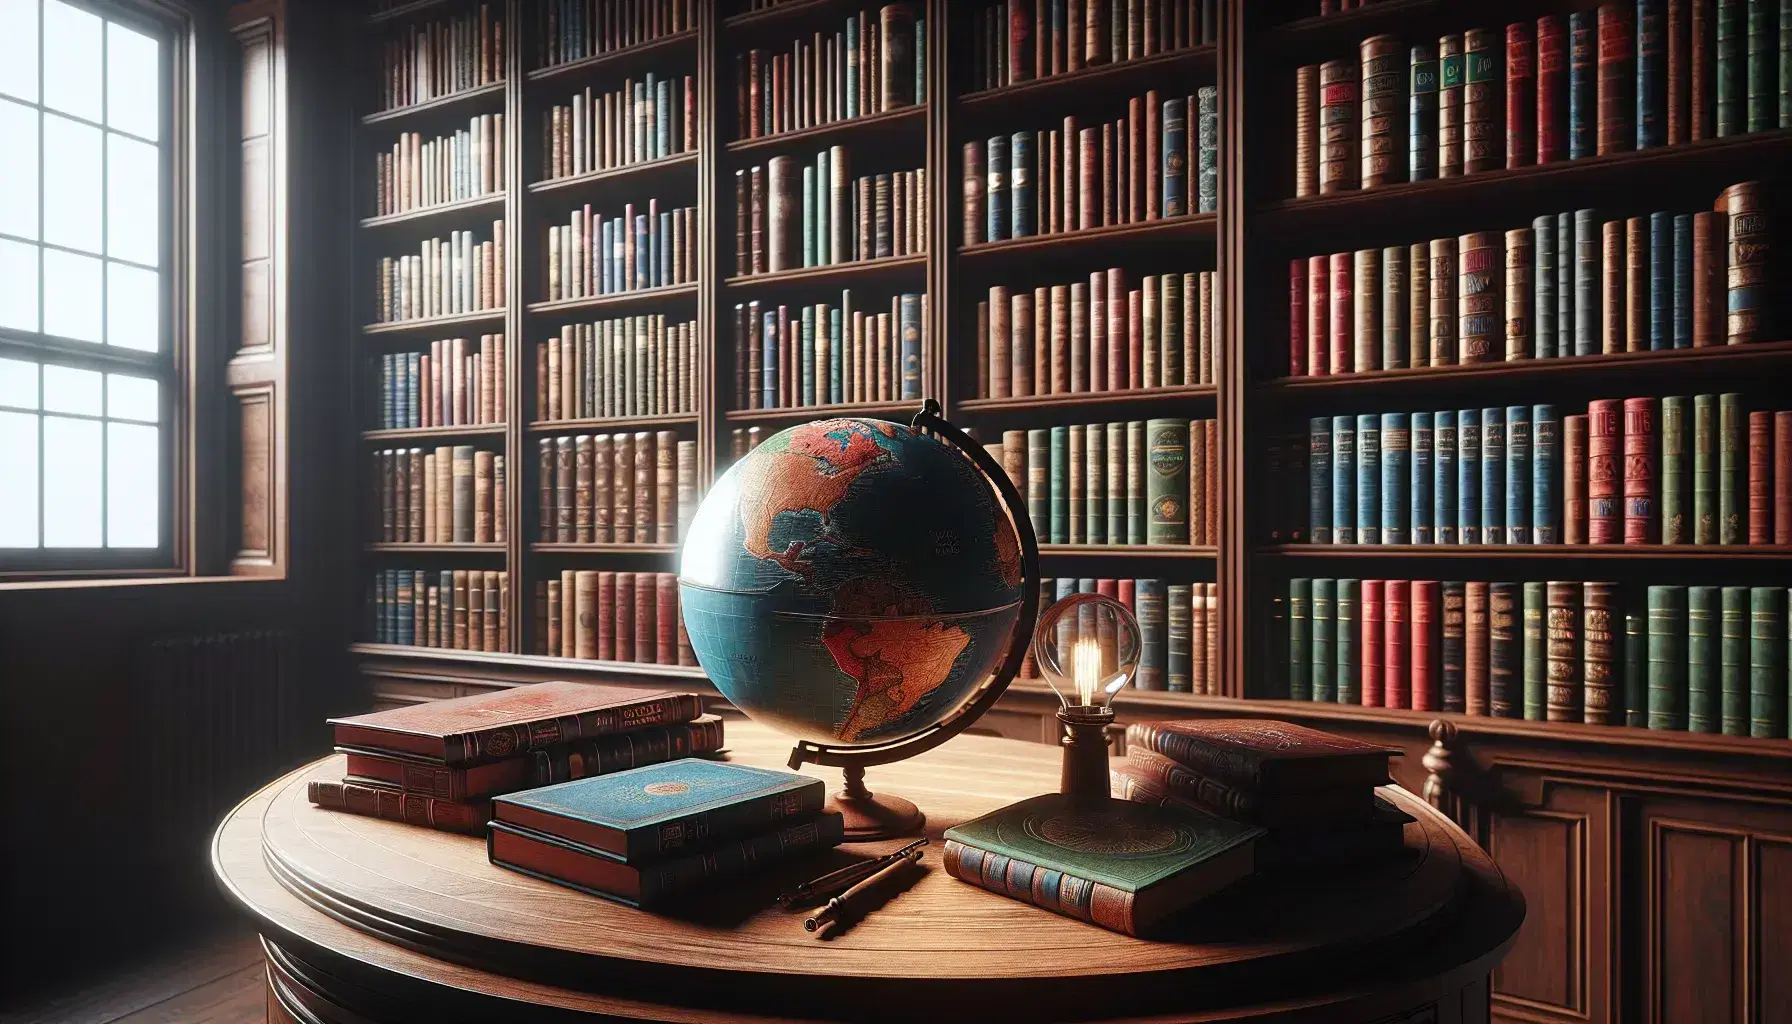 Biblioteca acogedora con estanterías de madera oscura llenas de libros coloridos, mesa con globo terráqueo y lupa, y cortinas que filtran luz natural.